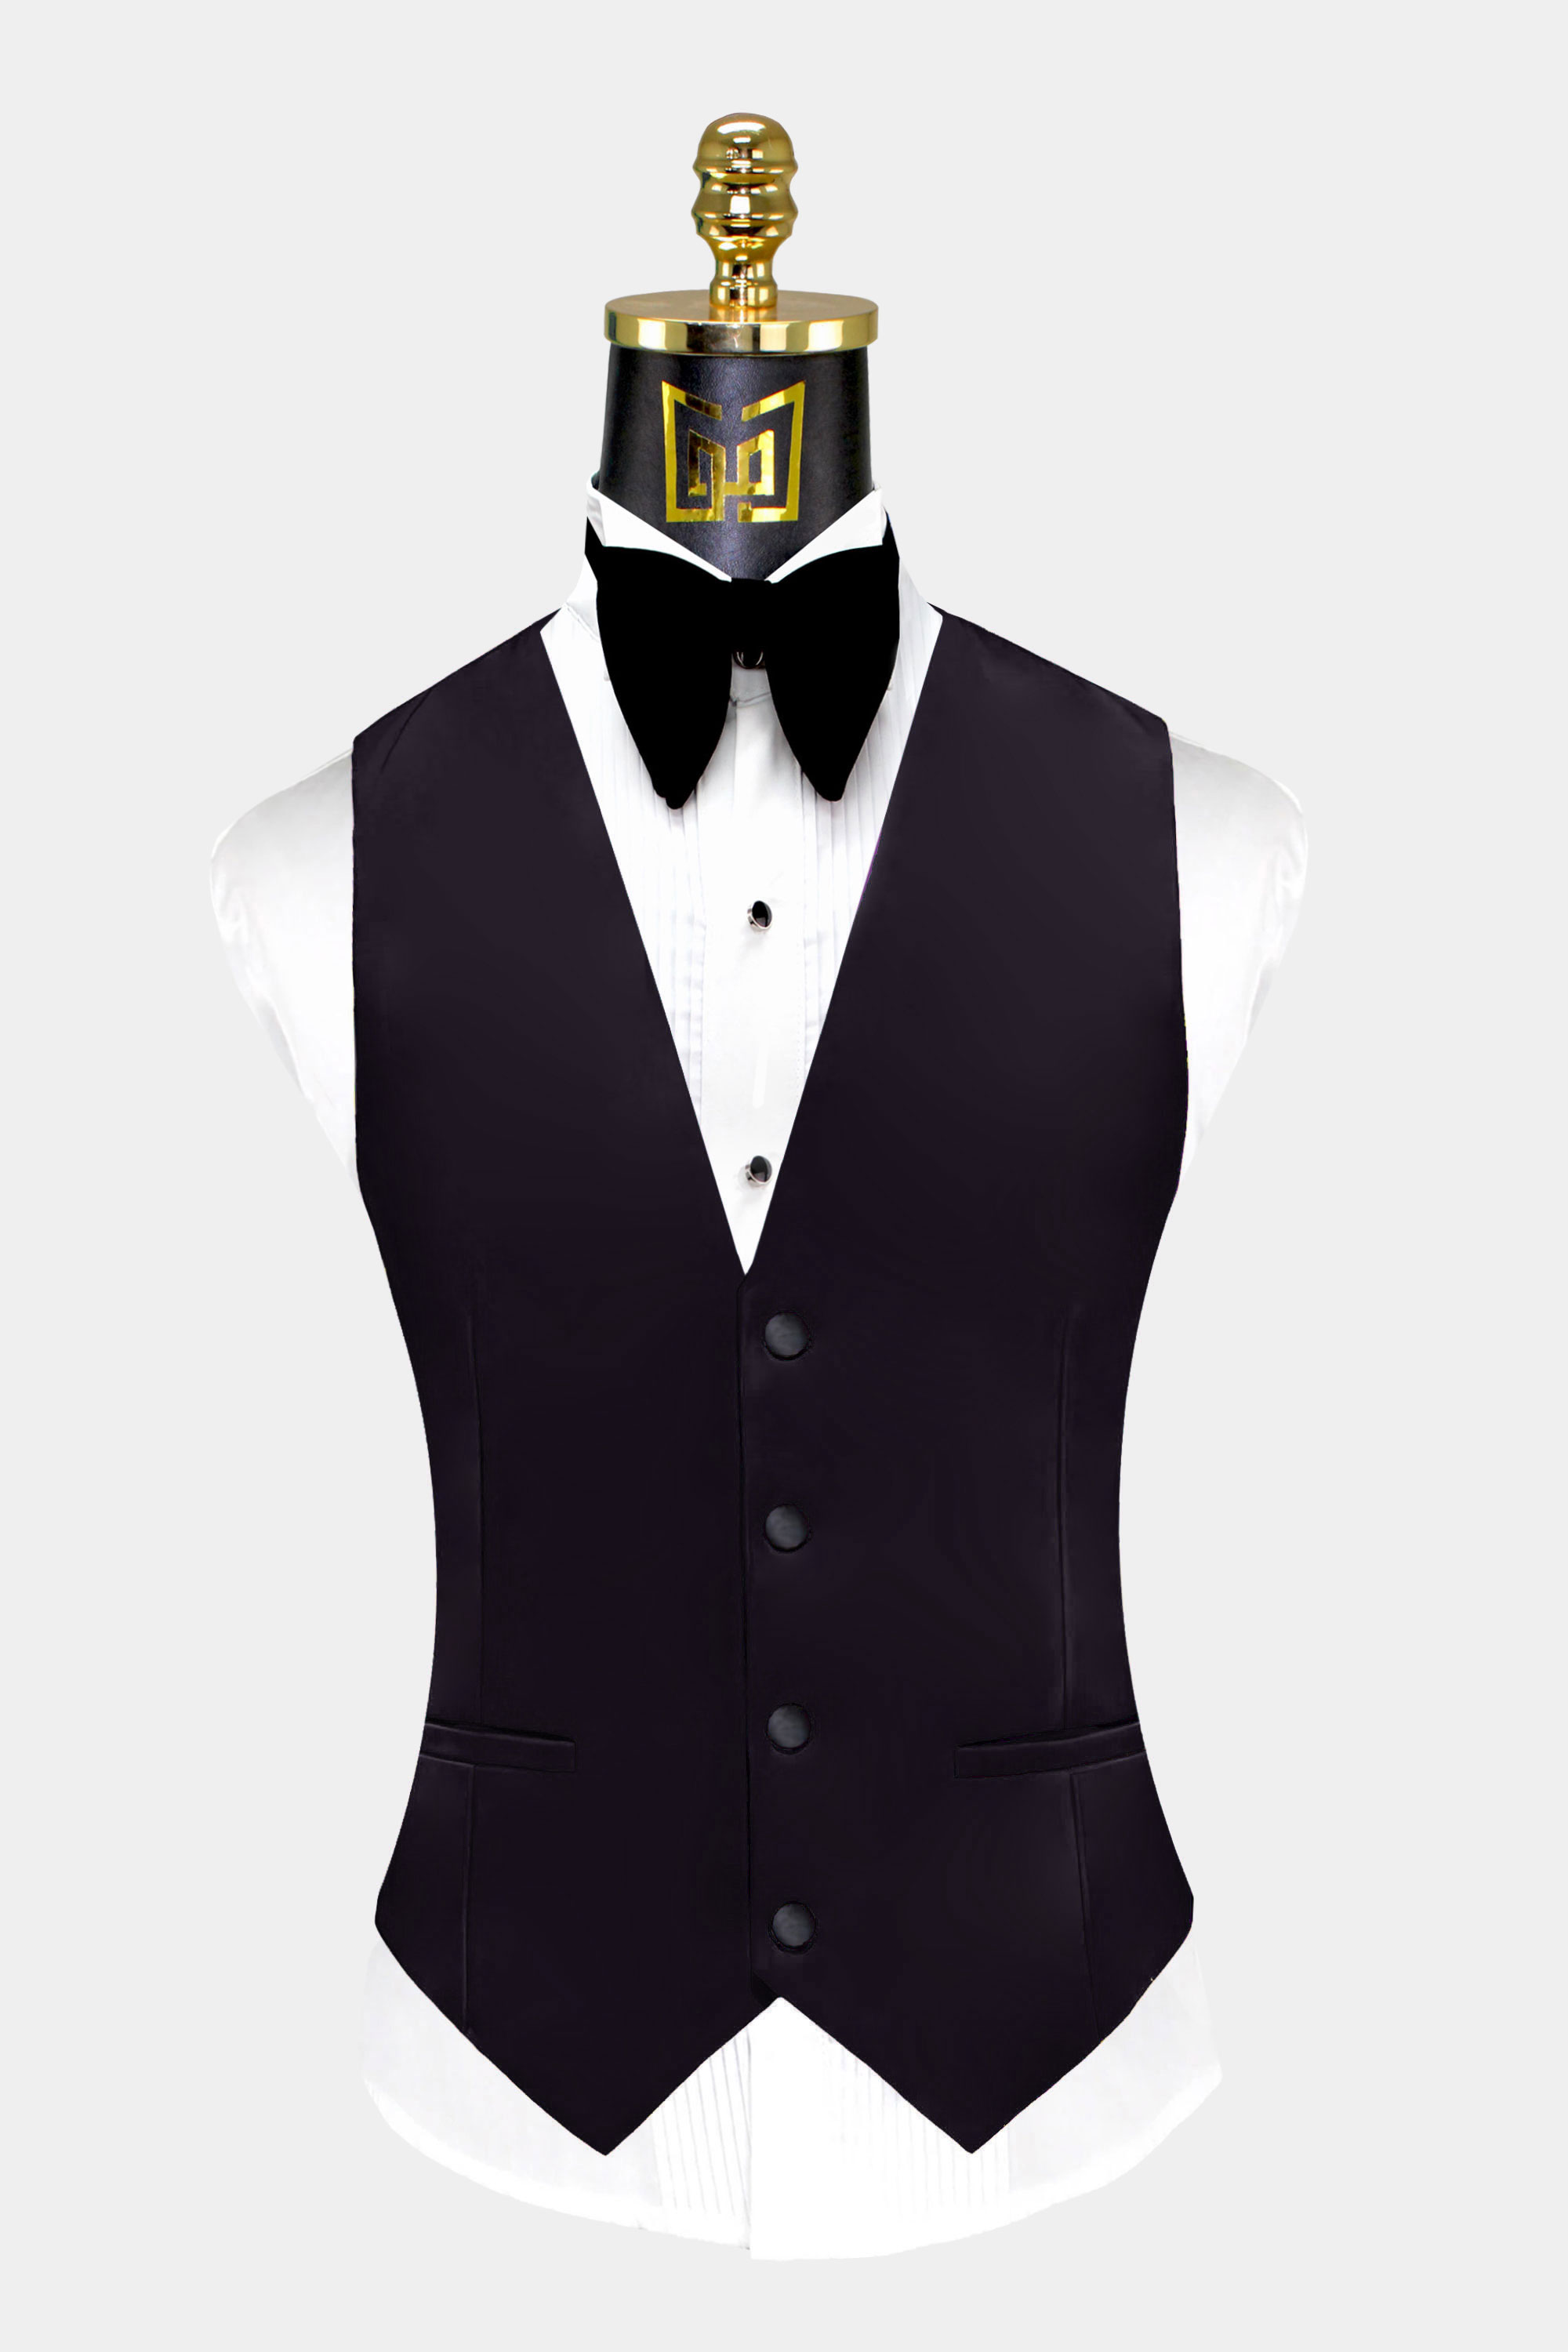 Mens-Black-Tuxedo-Vest-Groom-Wedding-Suit-Waistcoat-from-Gentlemansguru.com